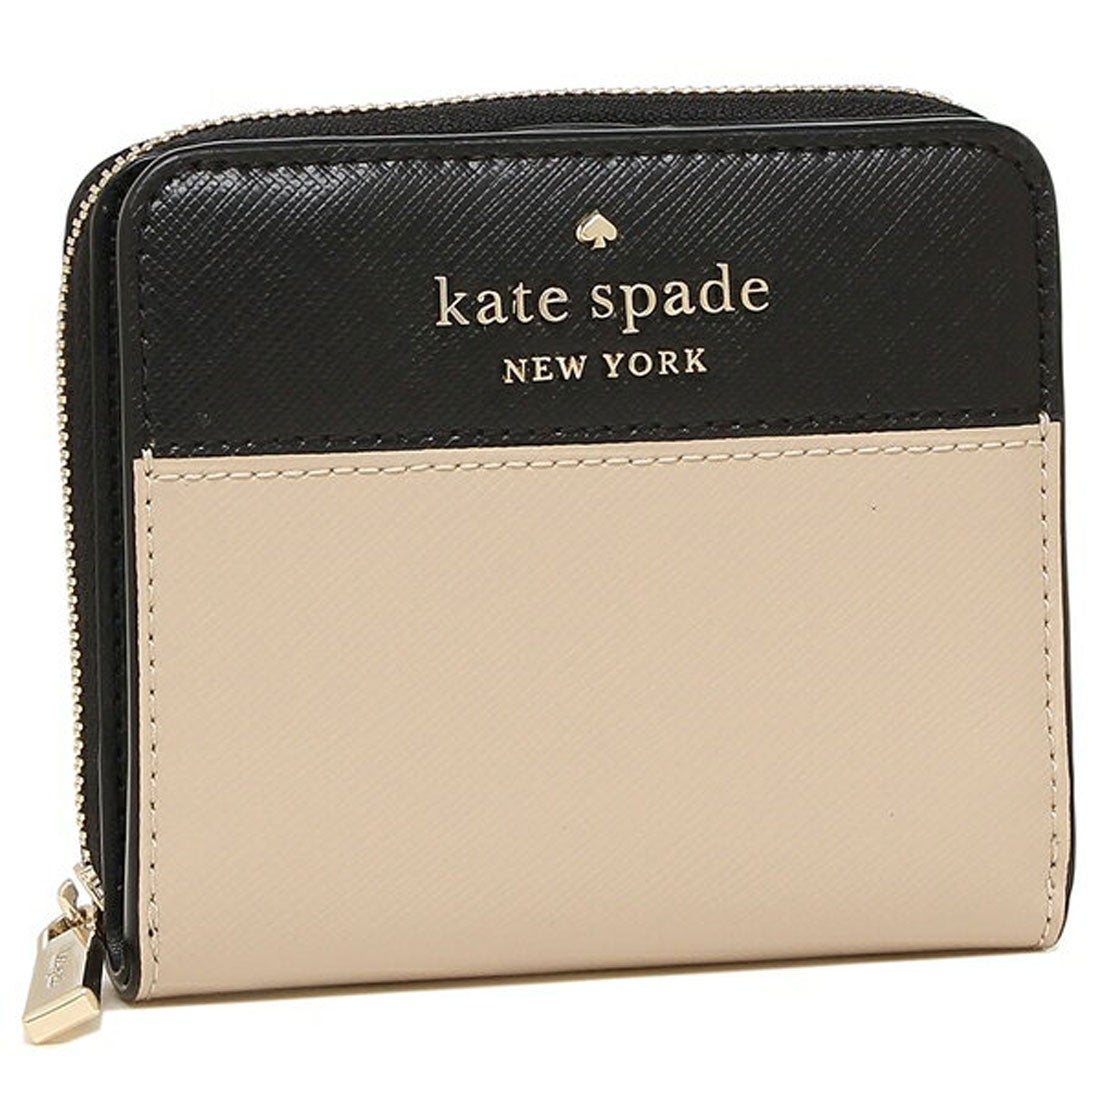 ケイトスペードニューヨーク kate spade new york 財布 二つ折り財布